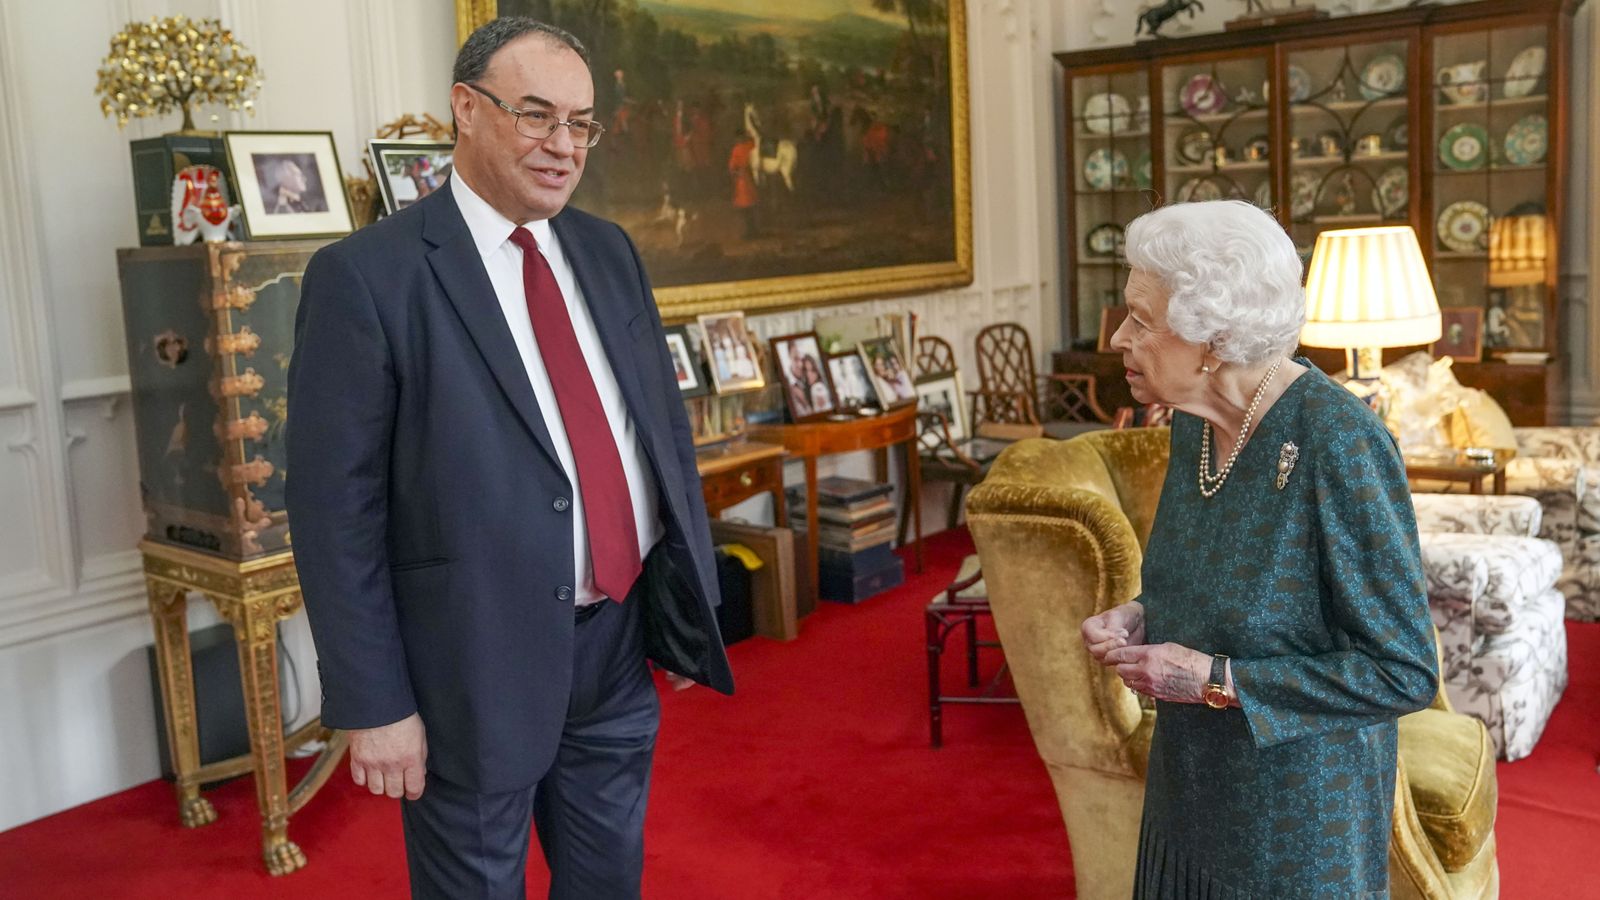 Ratu mengadakan pertunangan kerajaan kedua dalam seminggu dengan gubernur Bank of England |  Berita Inggris